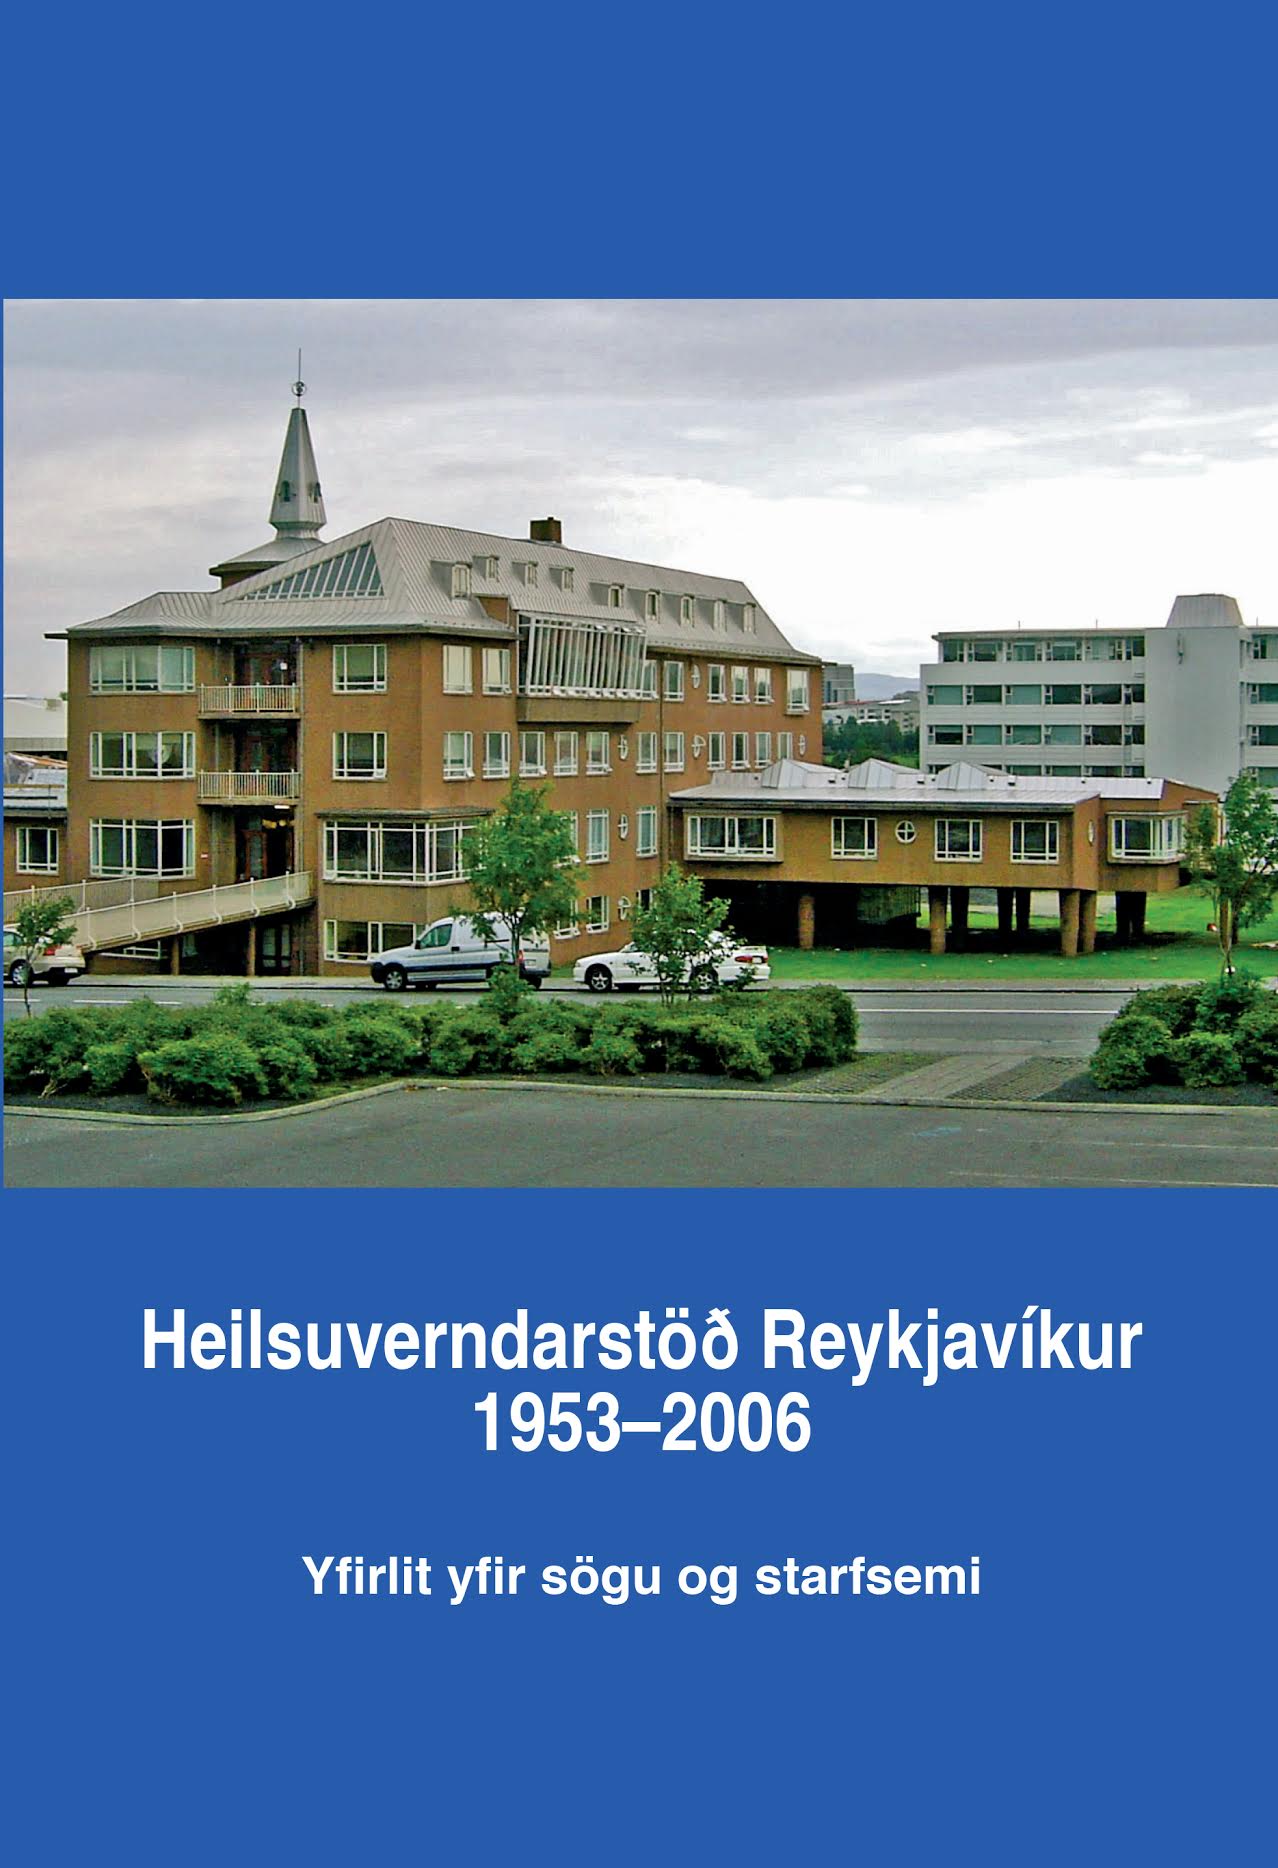 Heilsuverndarstöð Reykjavíkur